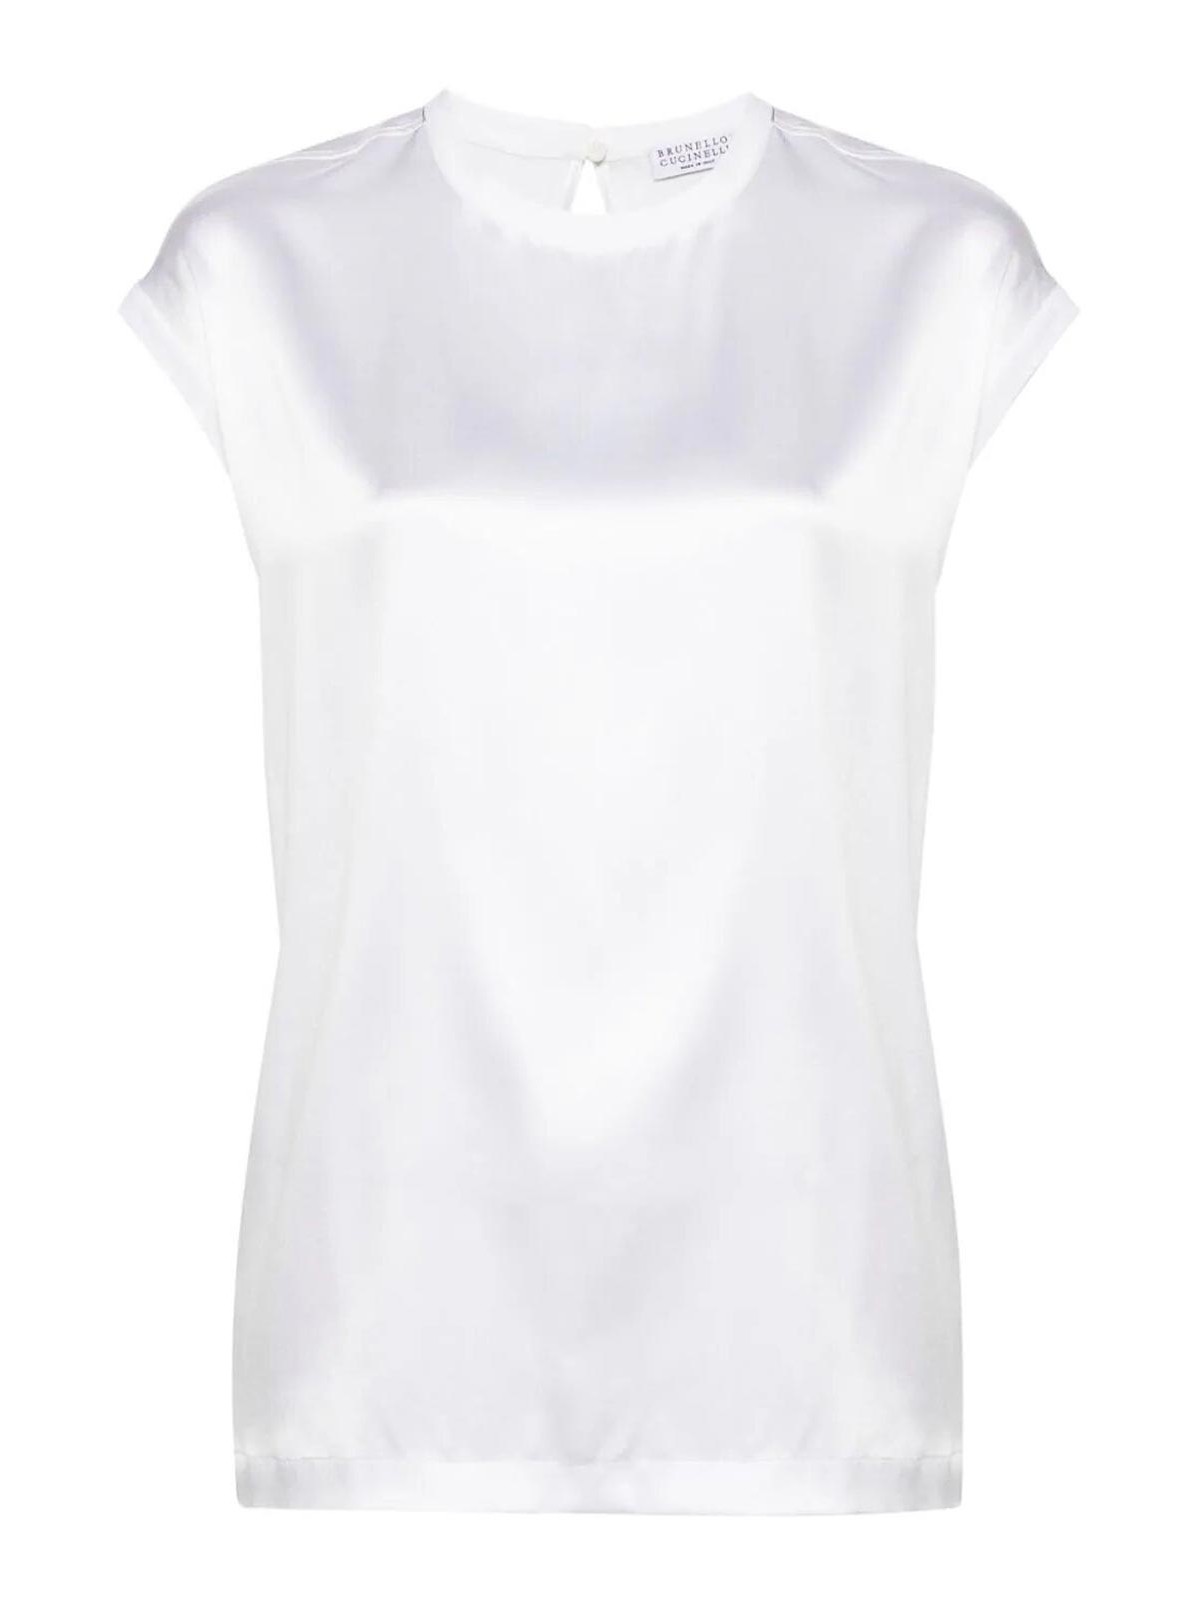 Shop Brunello Cucinelli Camiseta - Blanco